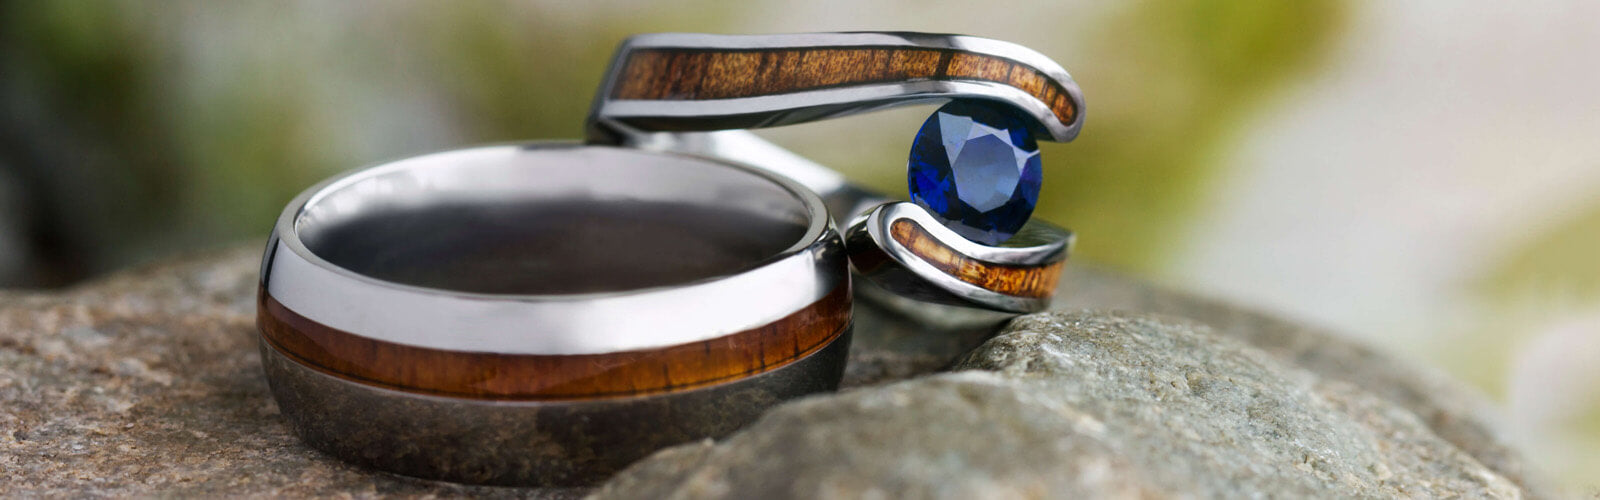 Wood Wedding Rings